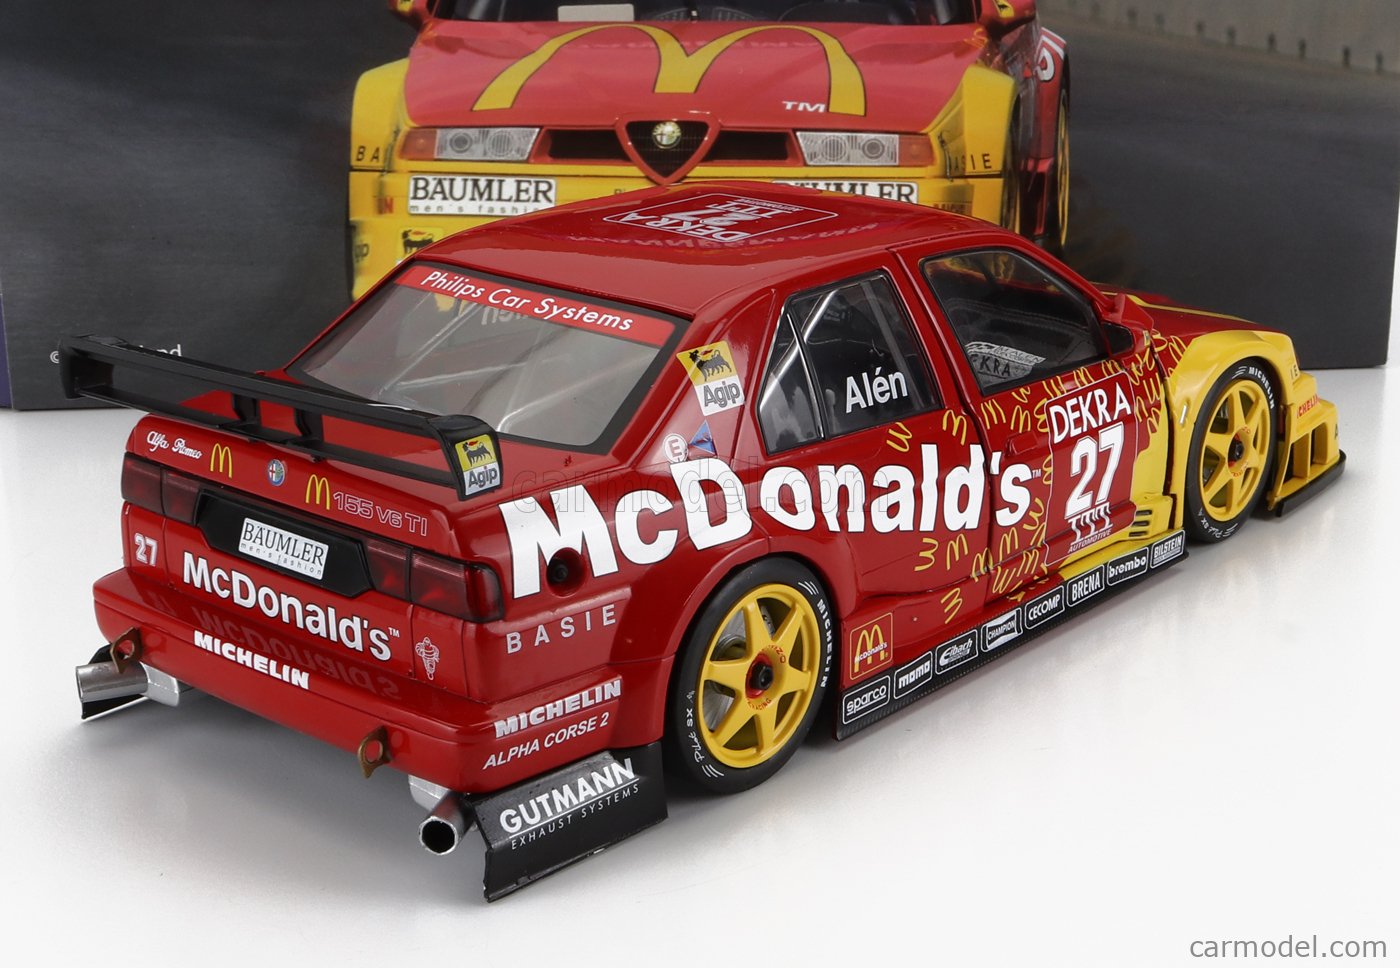 ALFA ROMEO - 155 V6 TI McDONALD'S N 27 DTM ITC RACE THUNDER HELSINKI 1995  M.ALEN